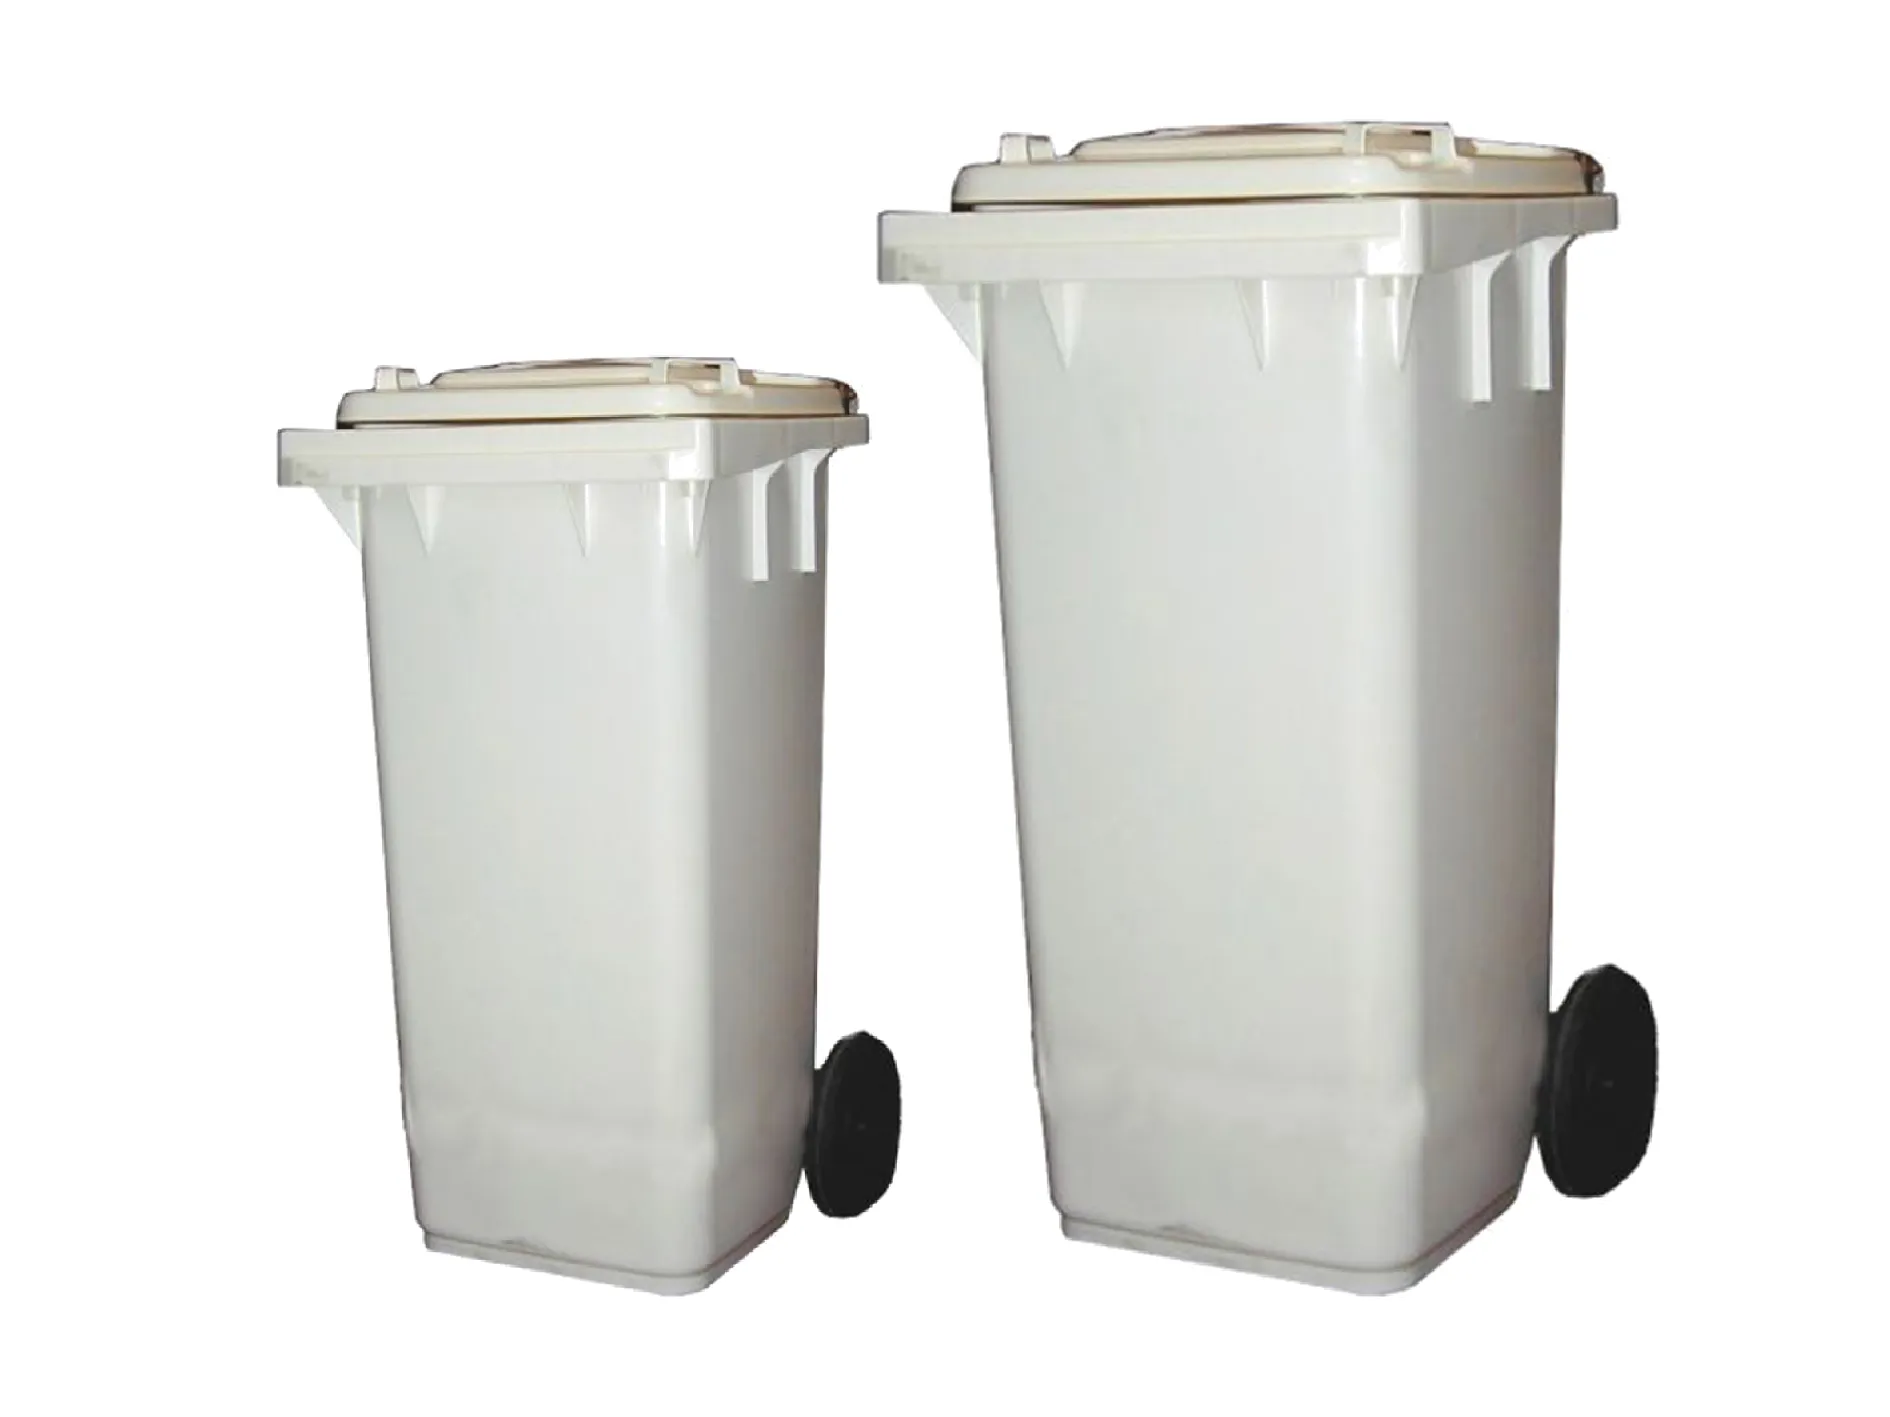 Disposal Bin with Side Wheel Range